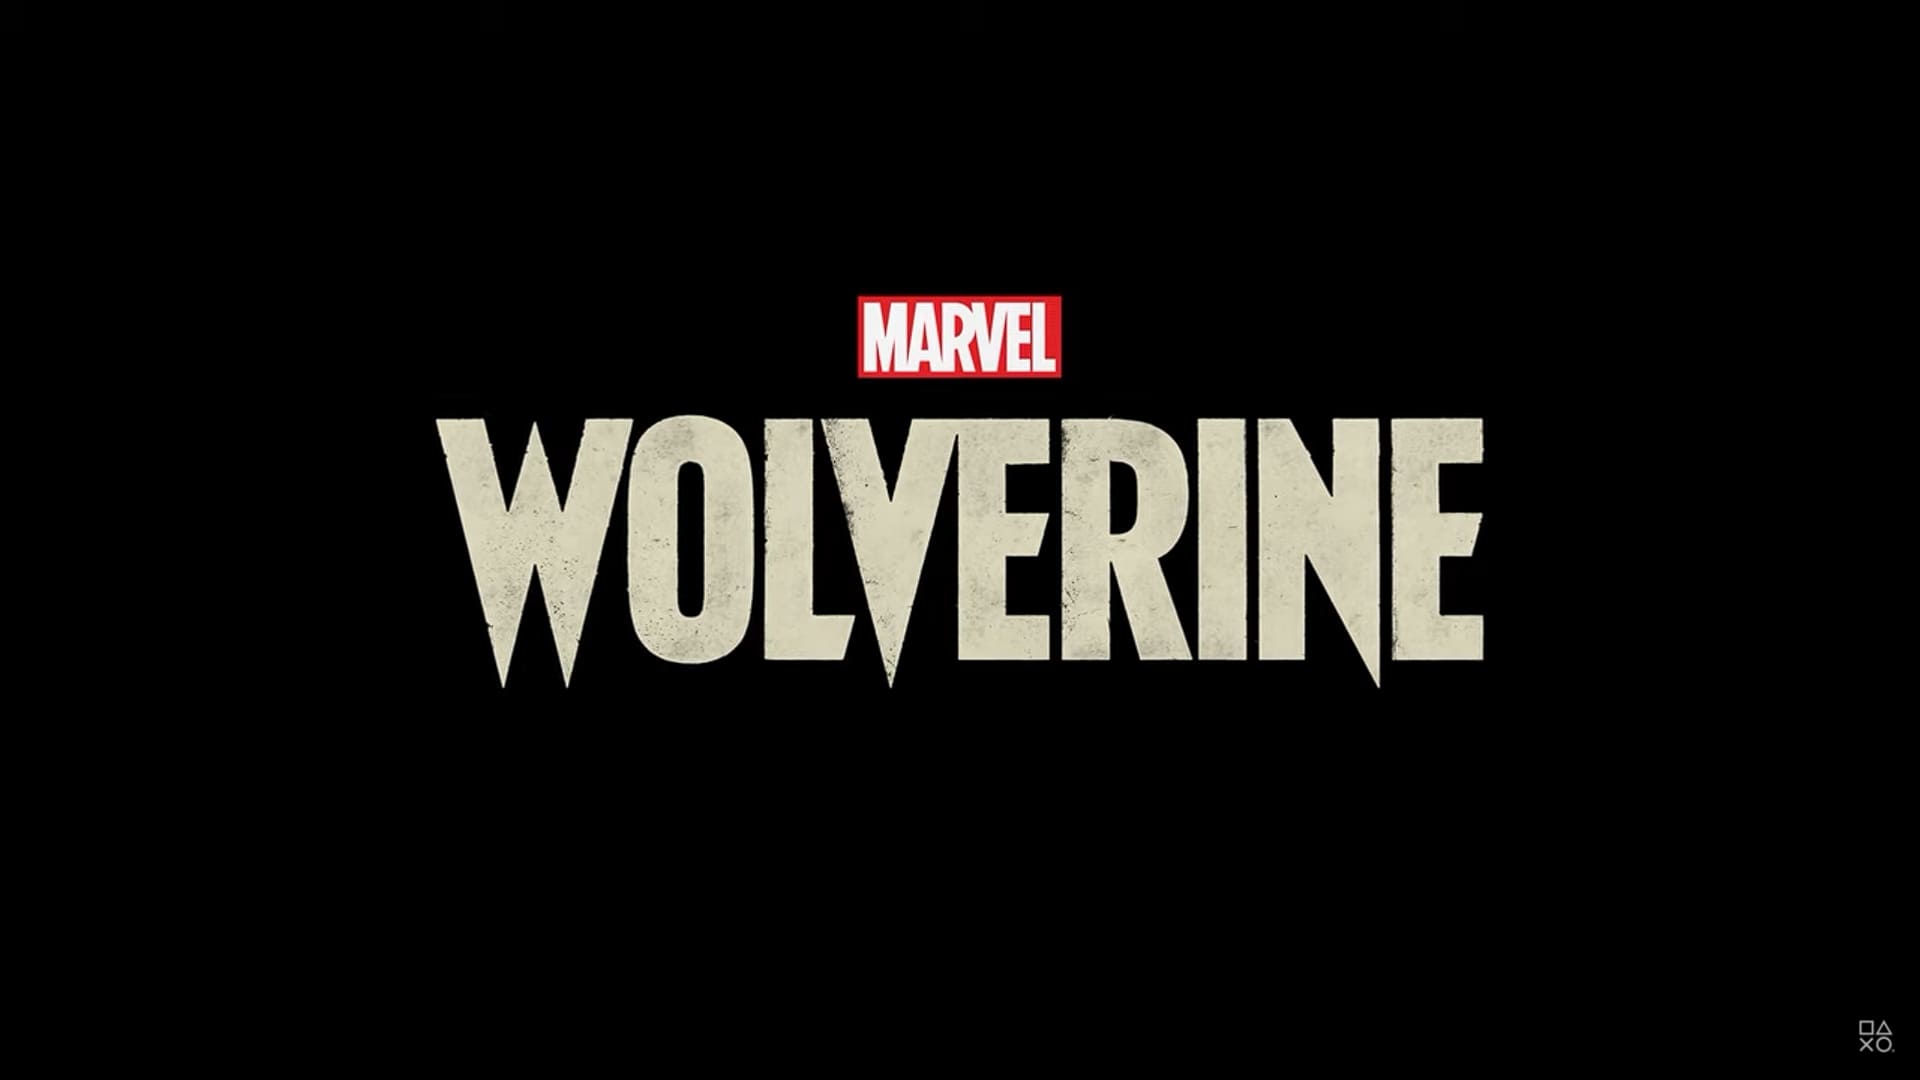 Marvel’s Wolverine: Mit asynchronen Multiplayer-Elementen à la Death Stranding?